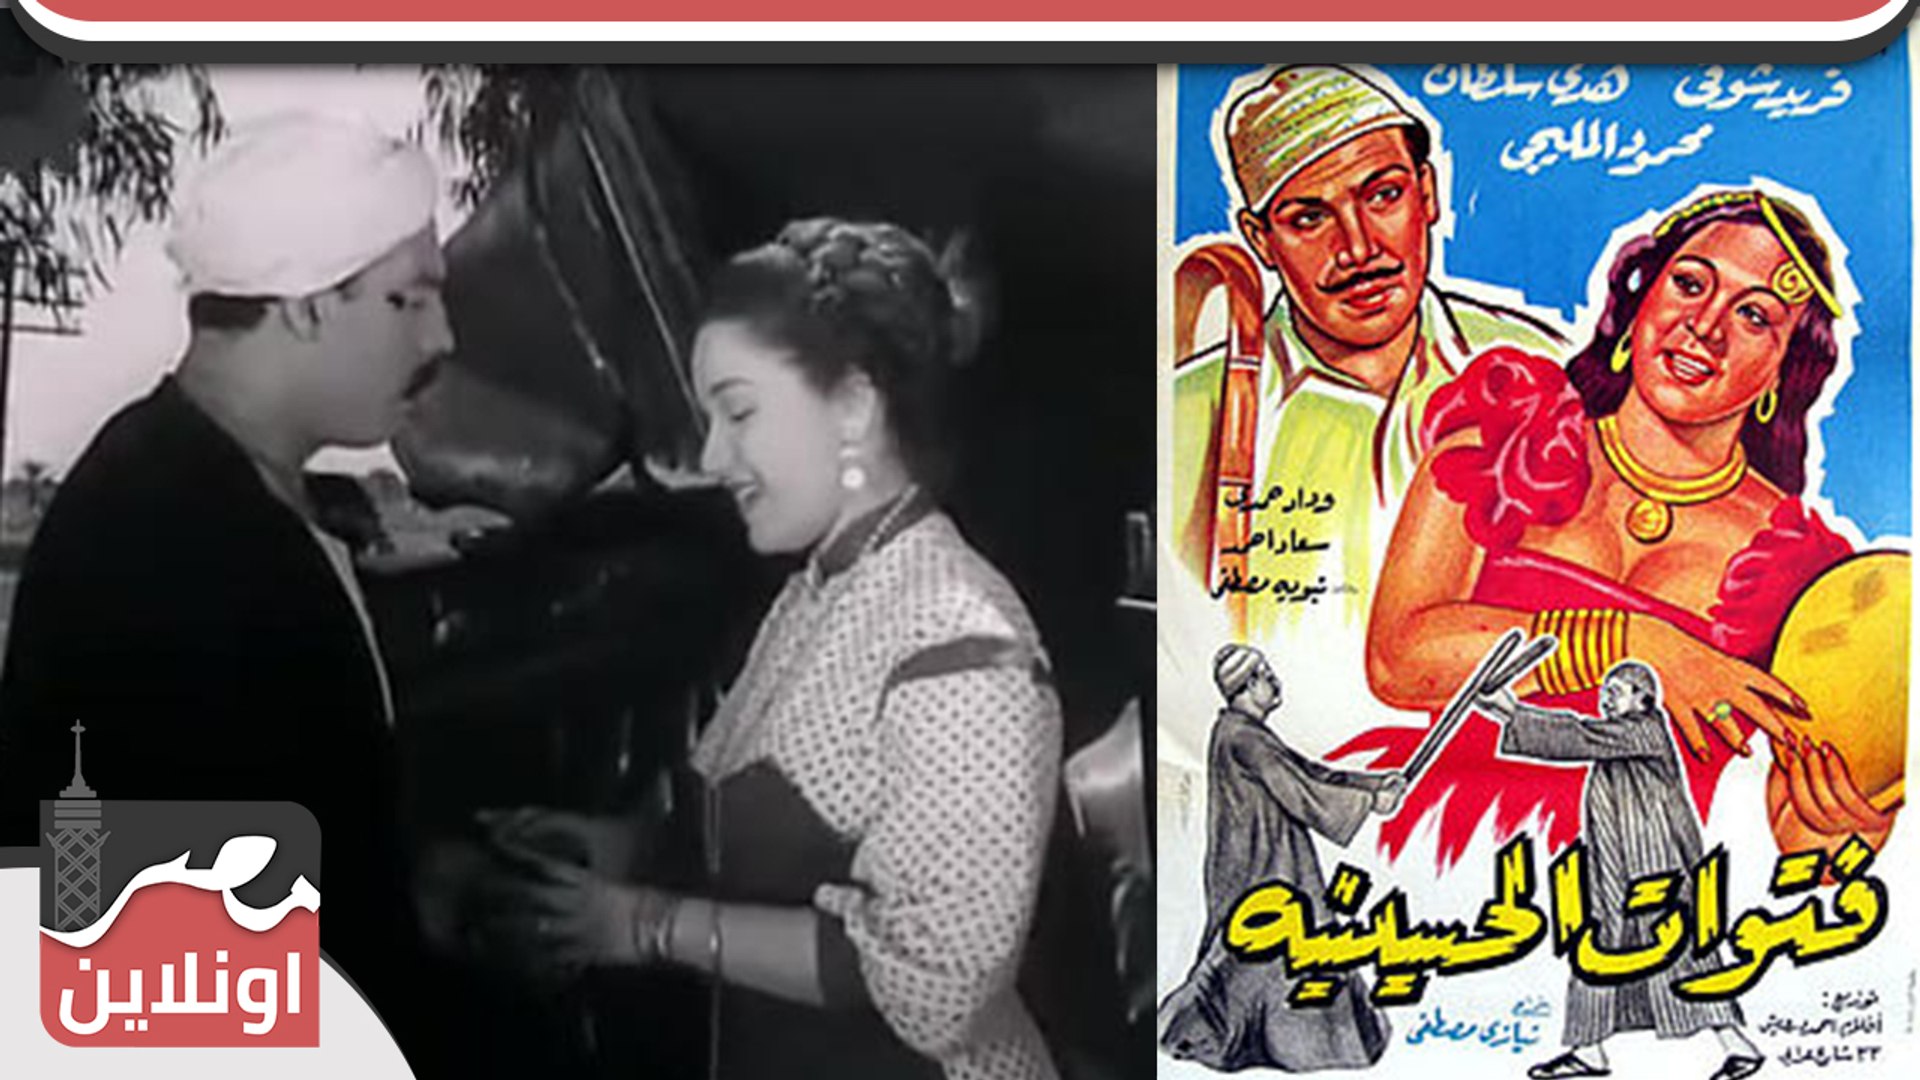 الفيلم العربي فتوات الحسينية 1954 - بطولة فريد شوقي وهدي سلطان - فيديو  Dailymotion